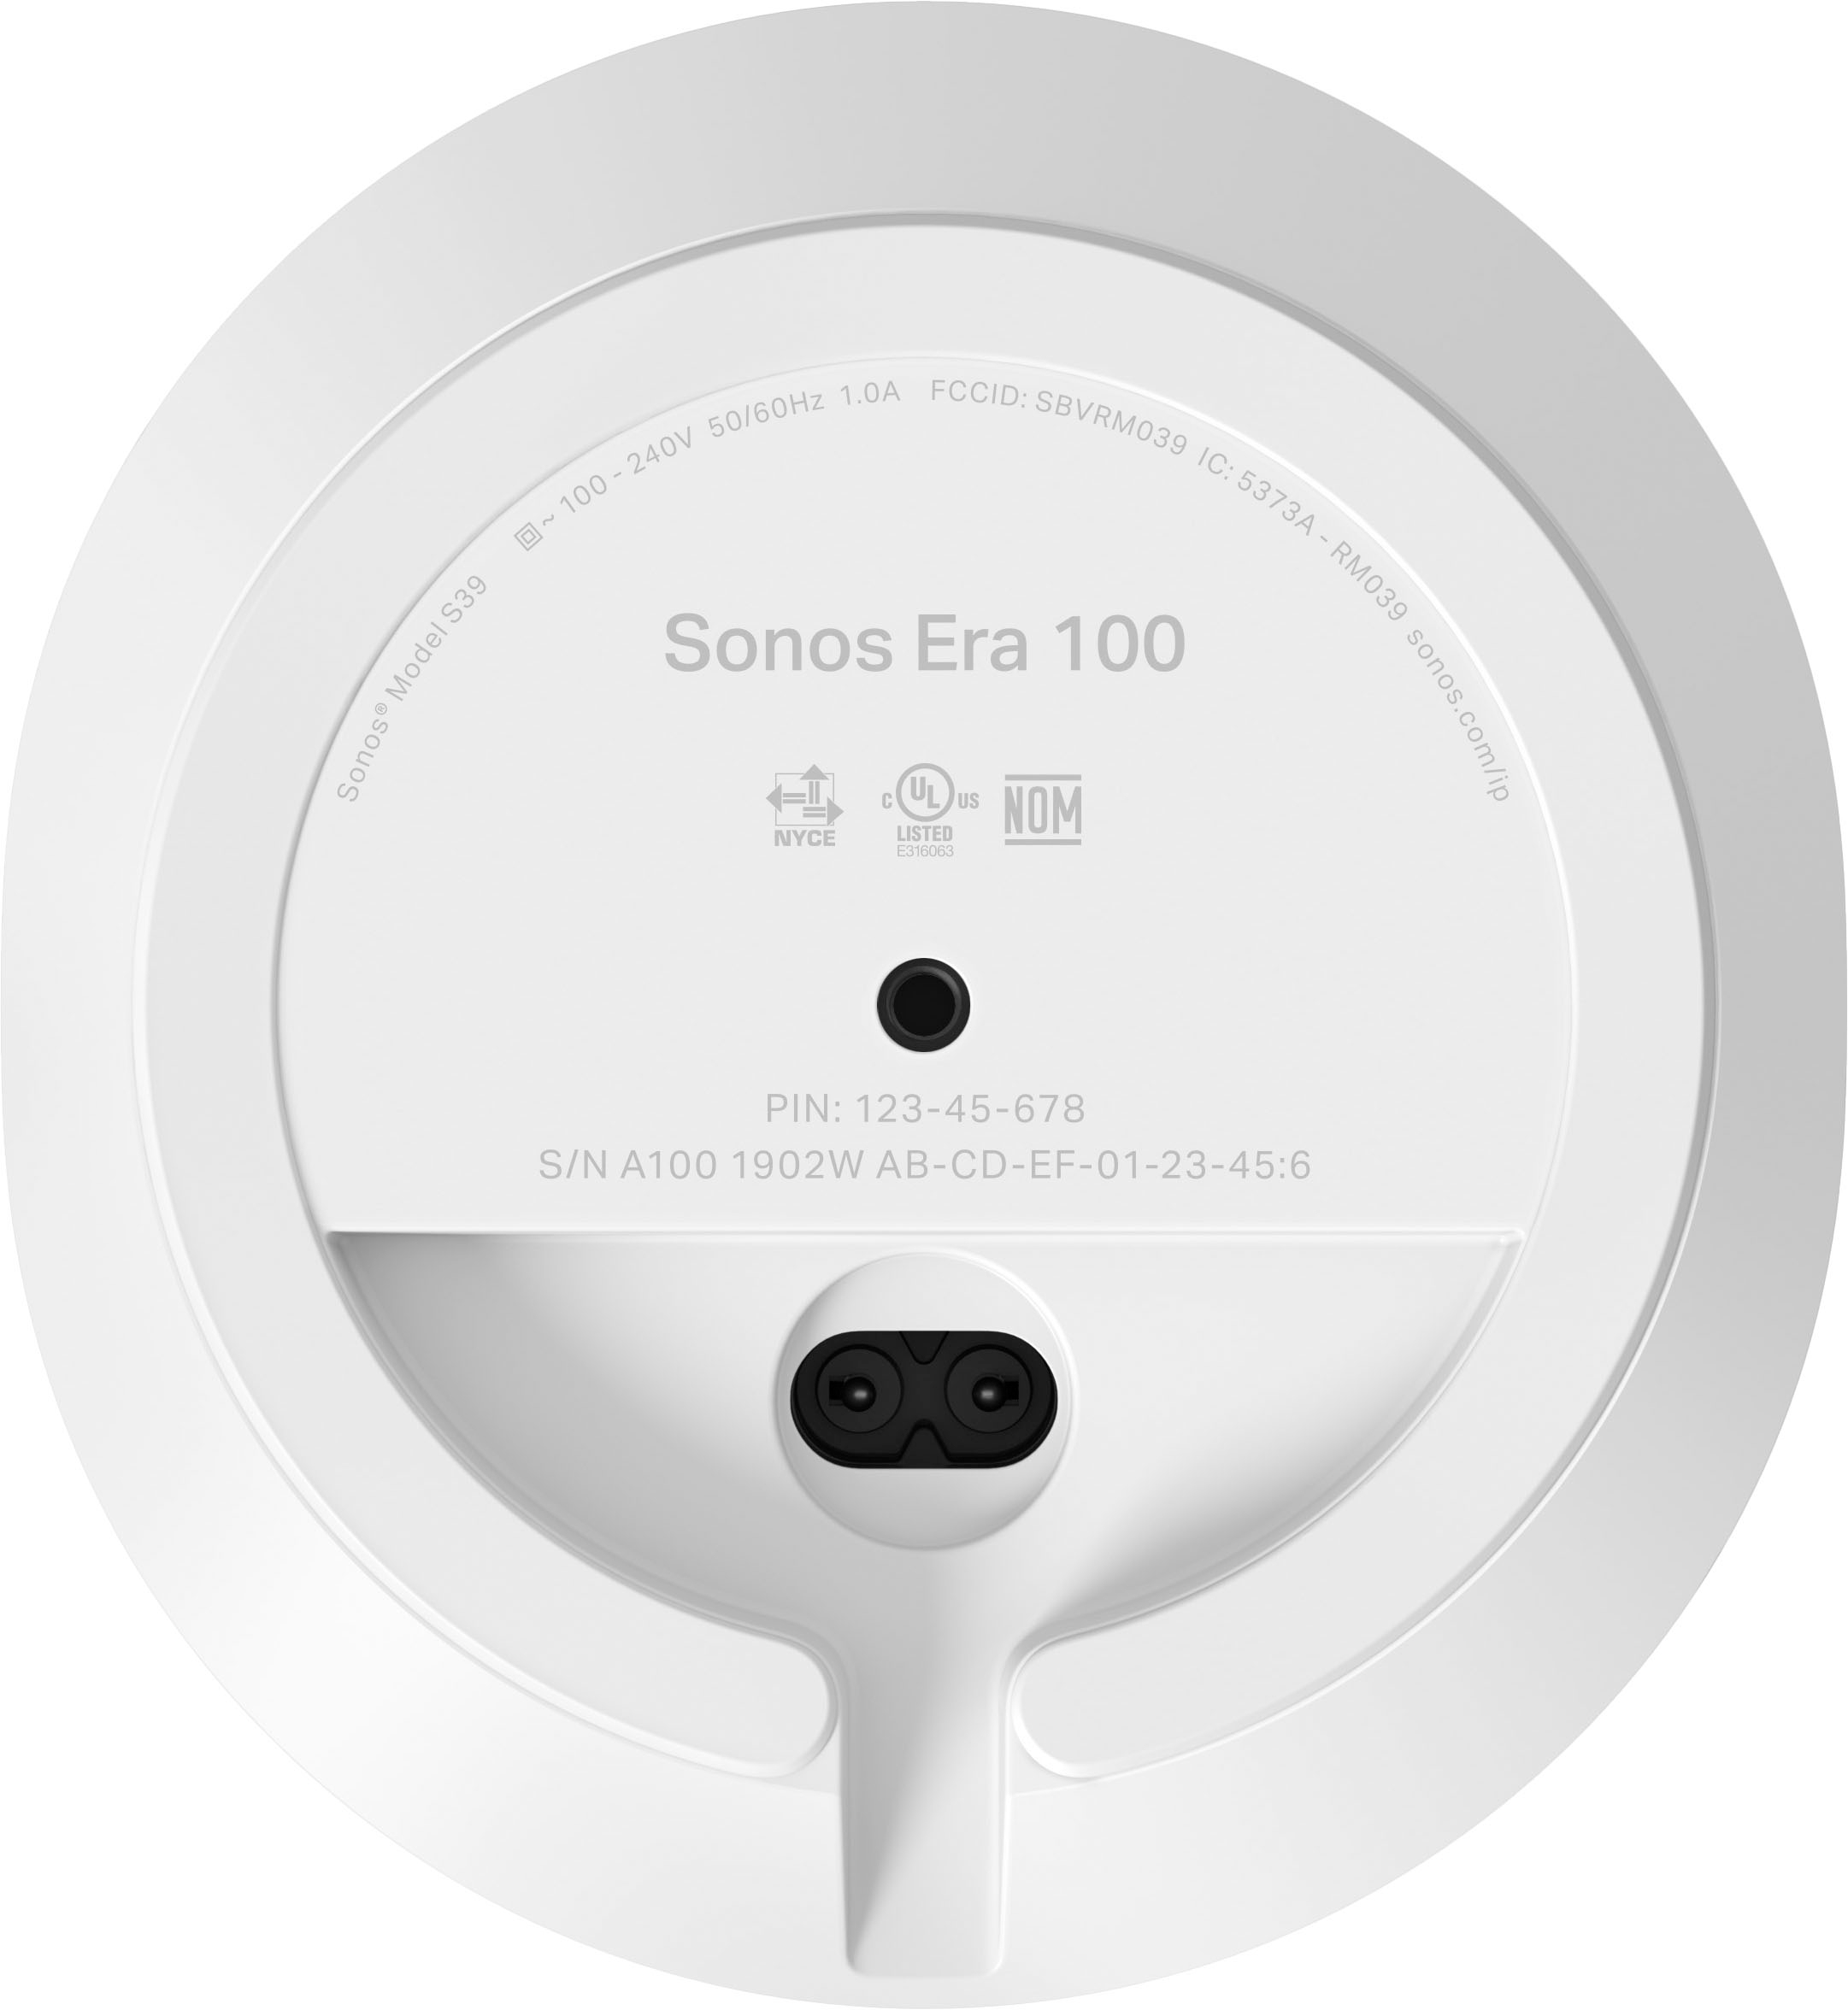 Best E10G1US1 (Each) Buy White Speaker - 100 Sonos Era